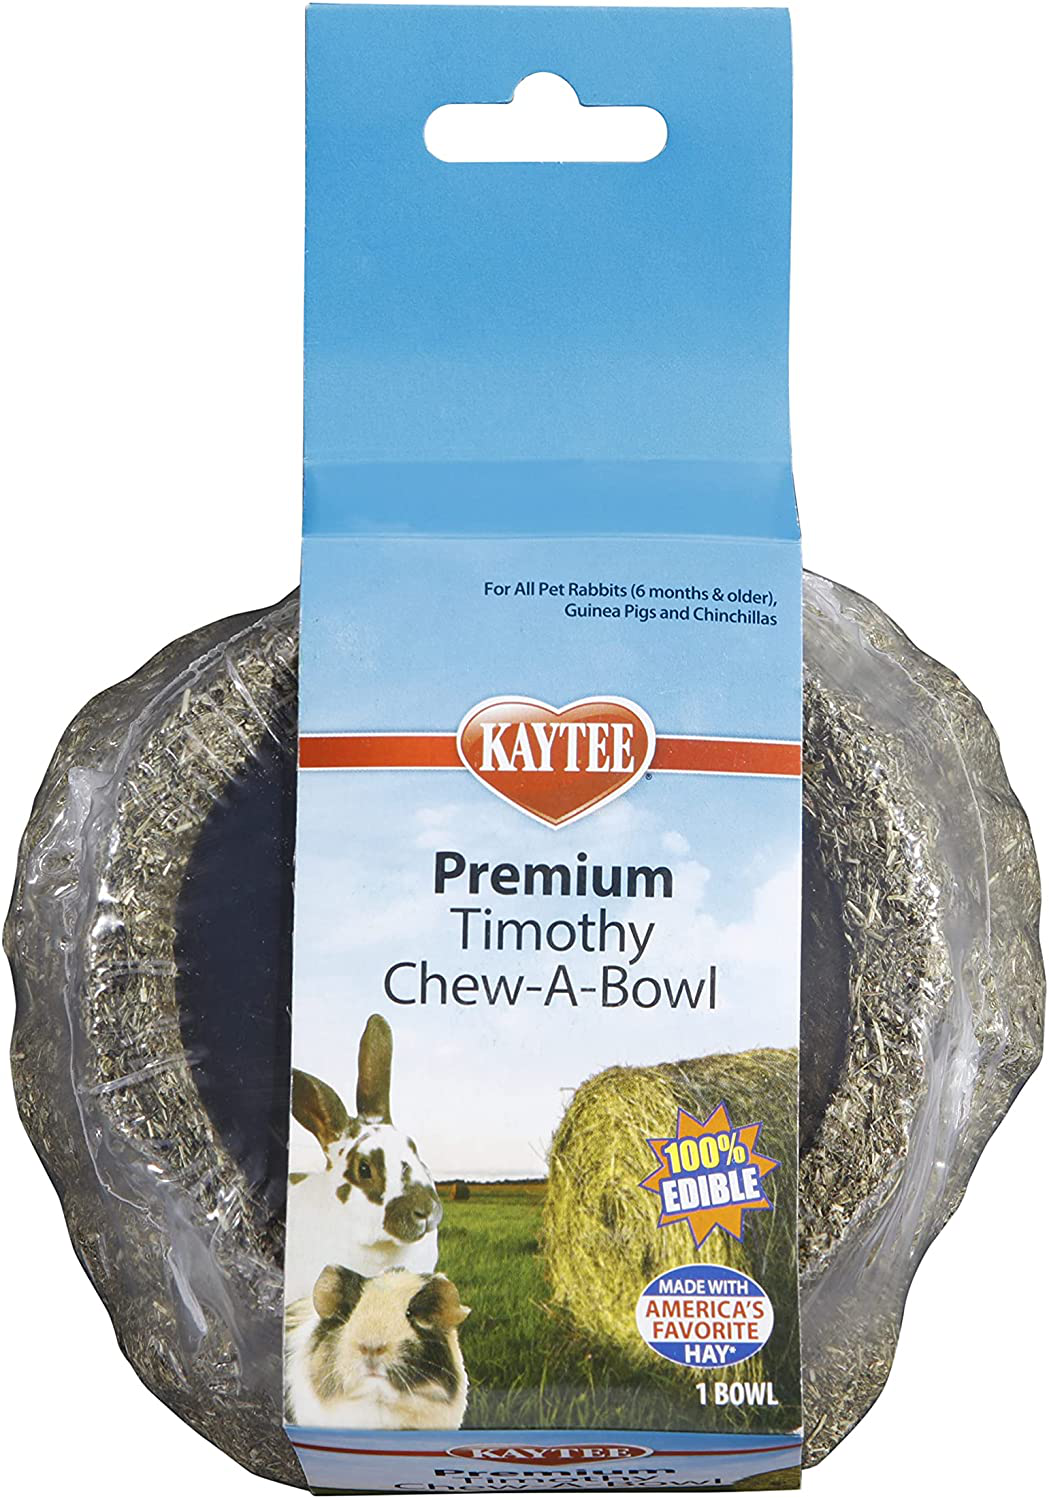 Premium Timothy Chew-A-Bowl